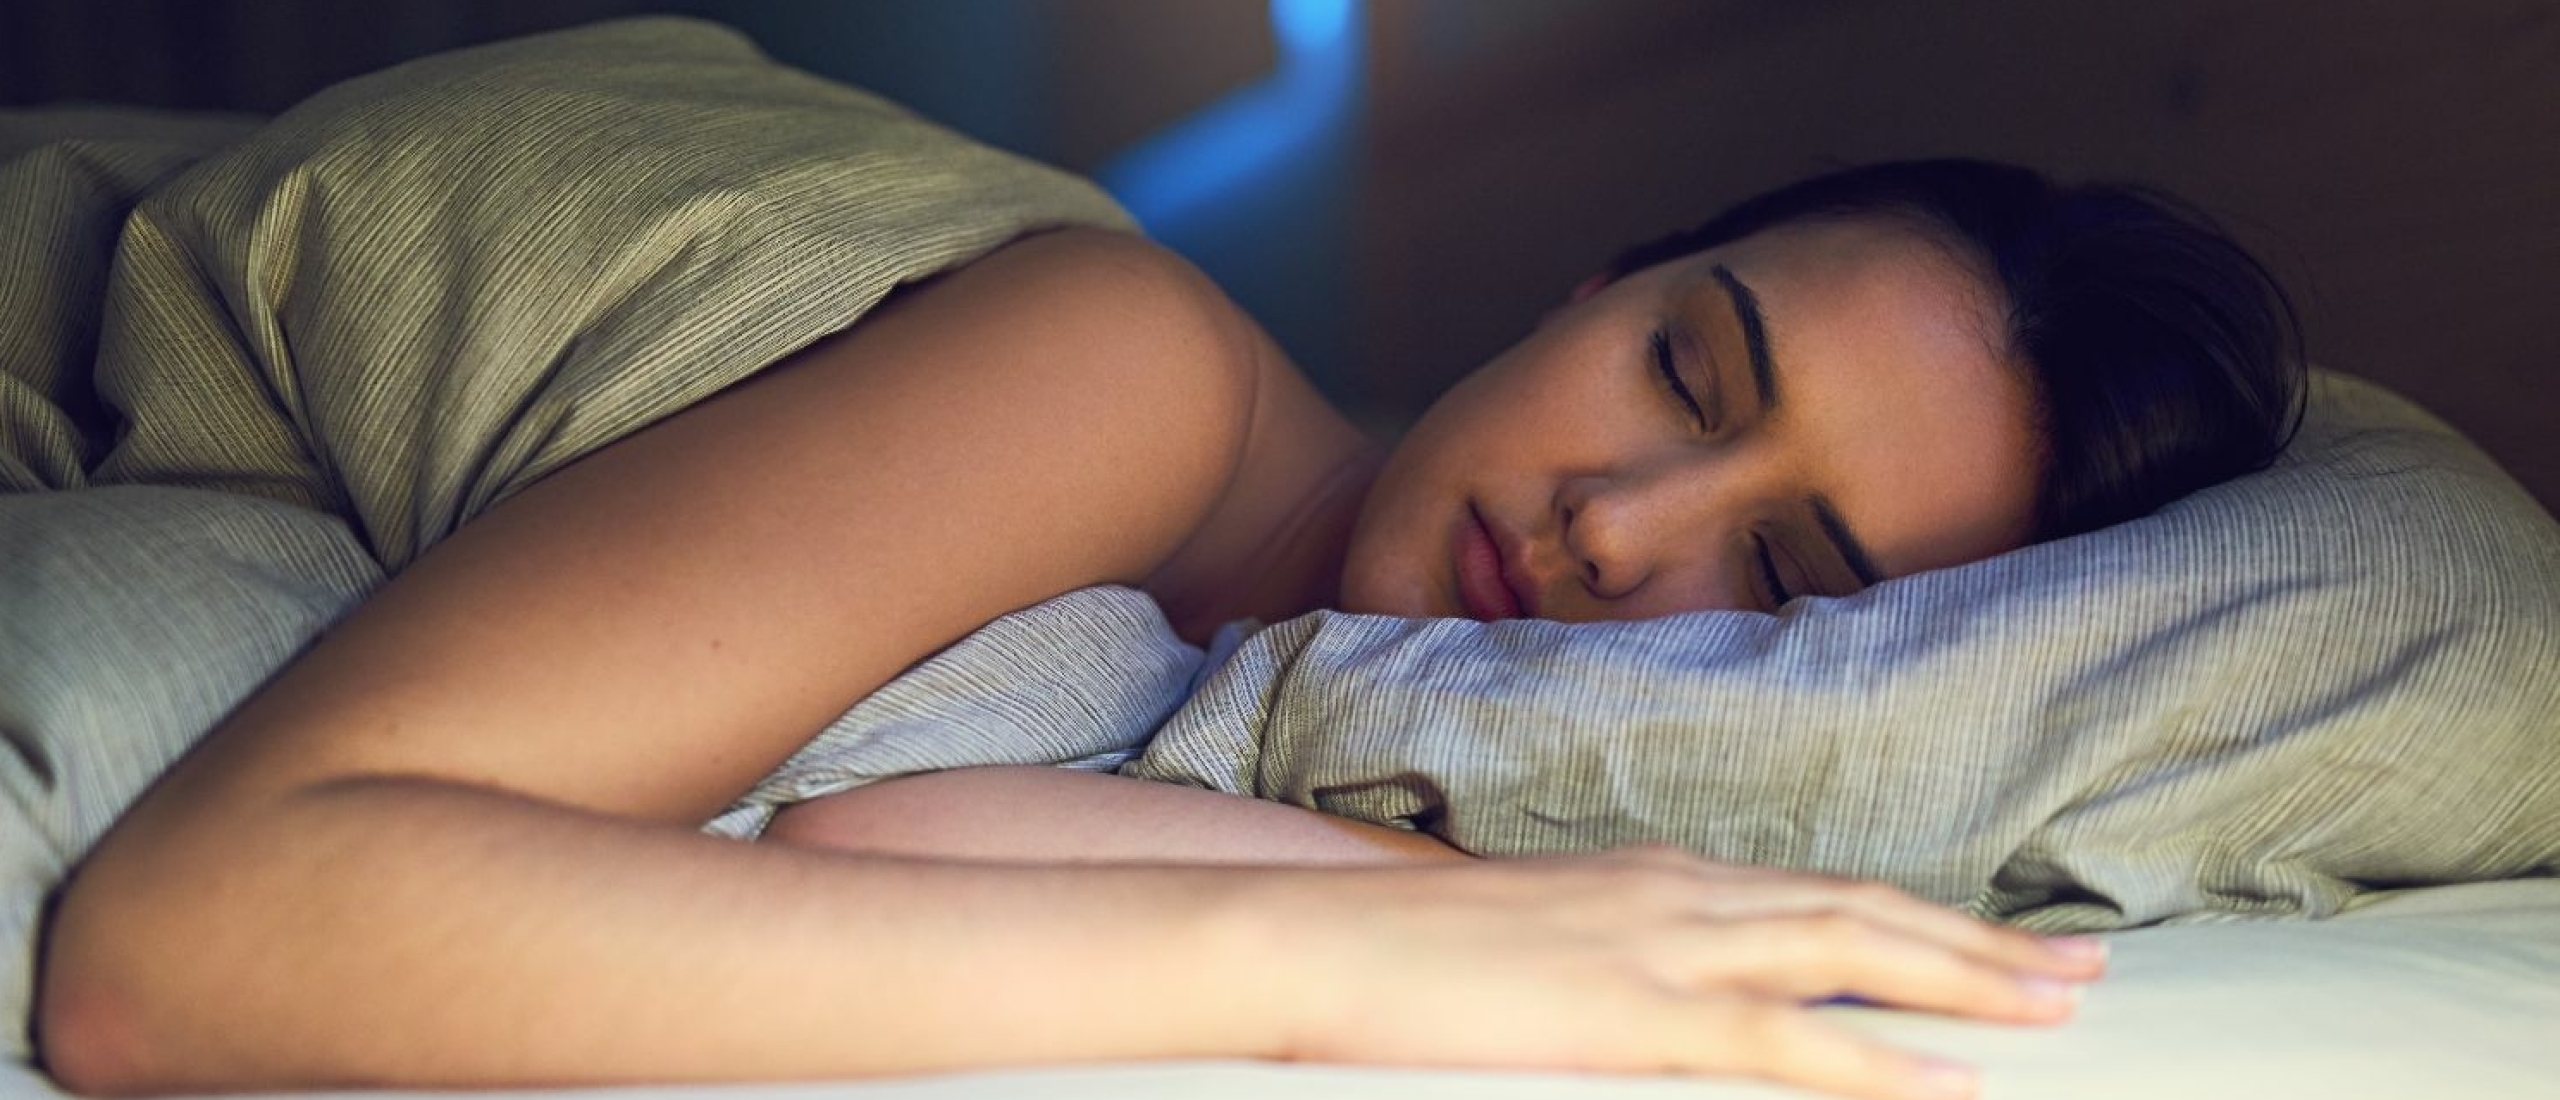 De 3-2-1-methode om beter te slapen: wat is het en wat zijn de voordelen?